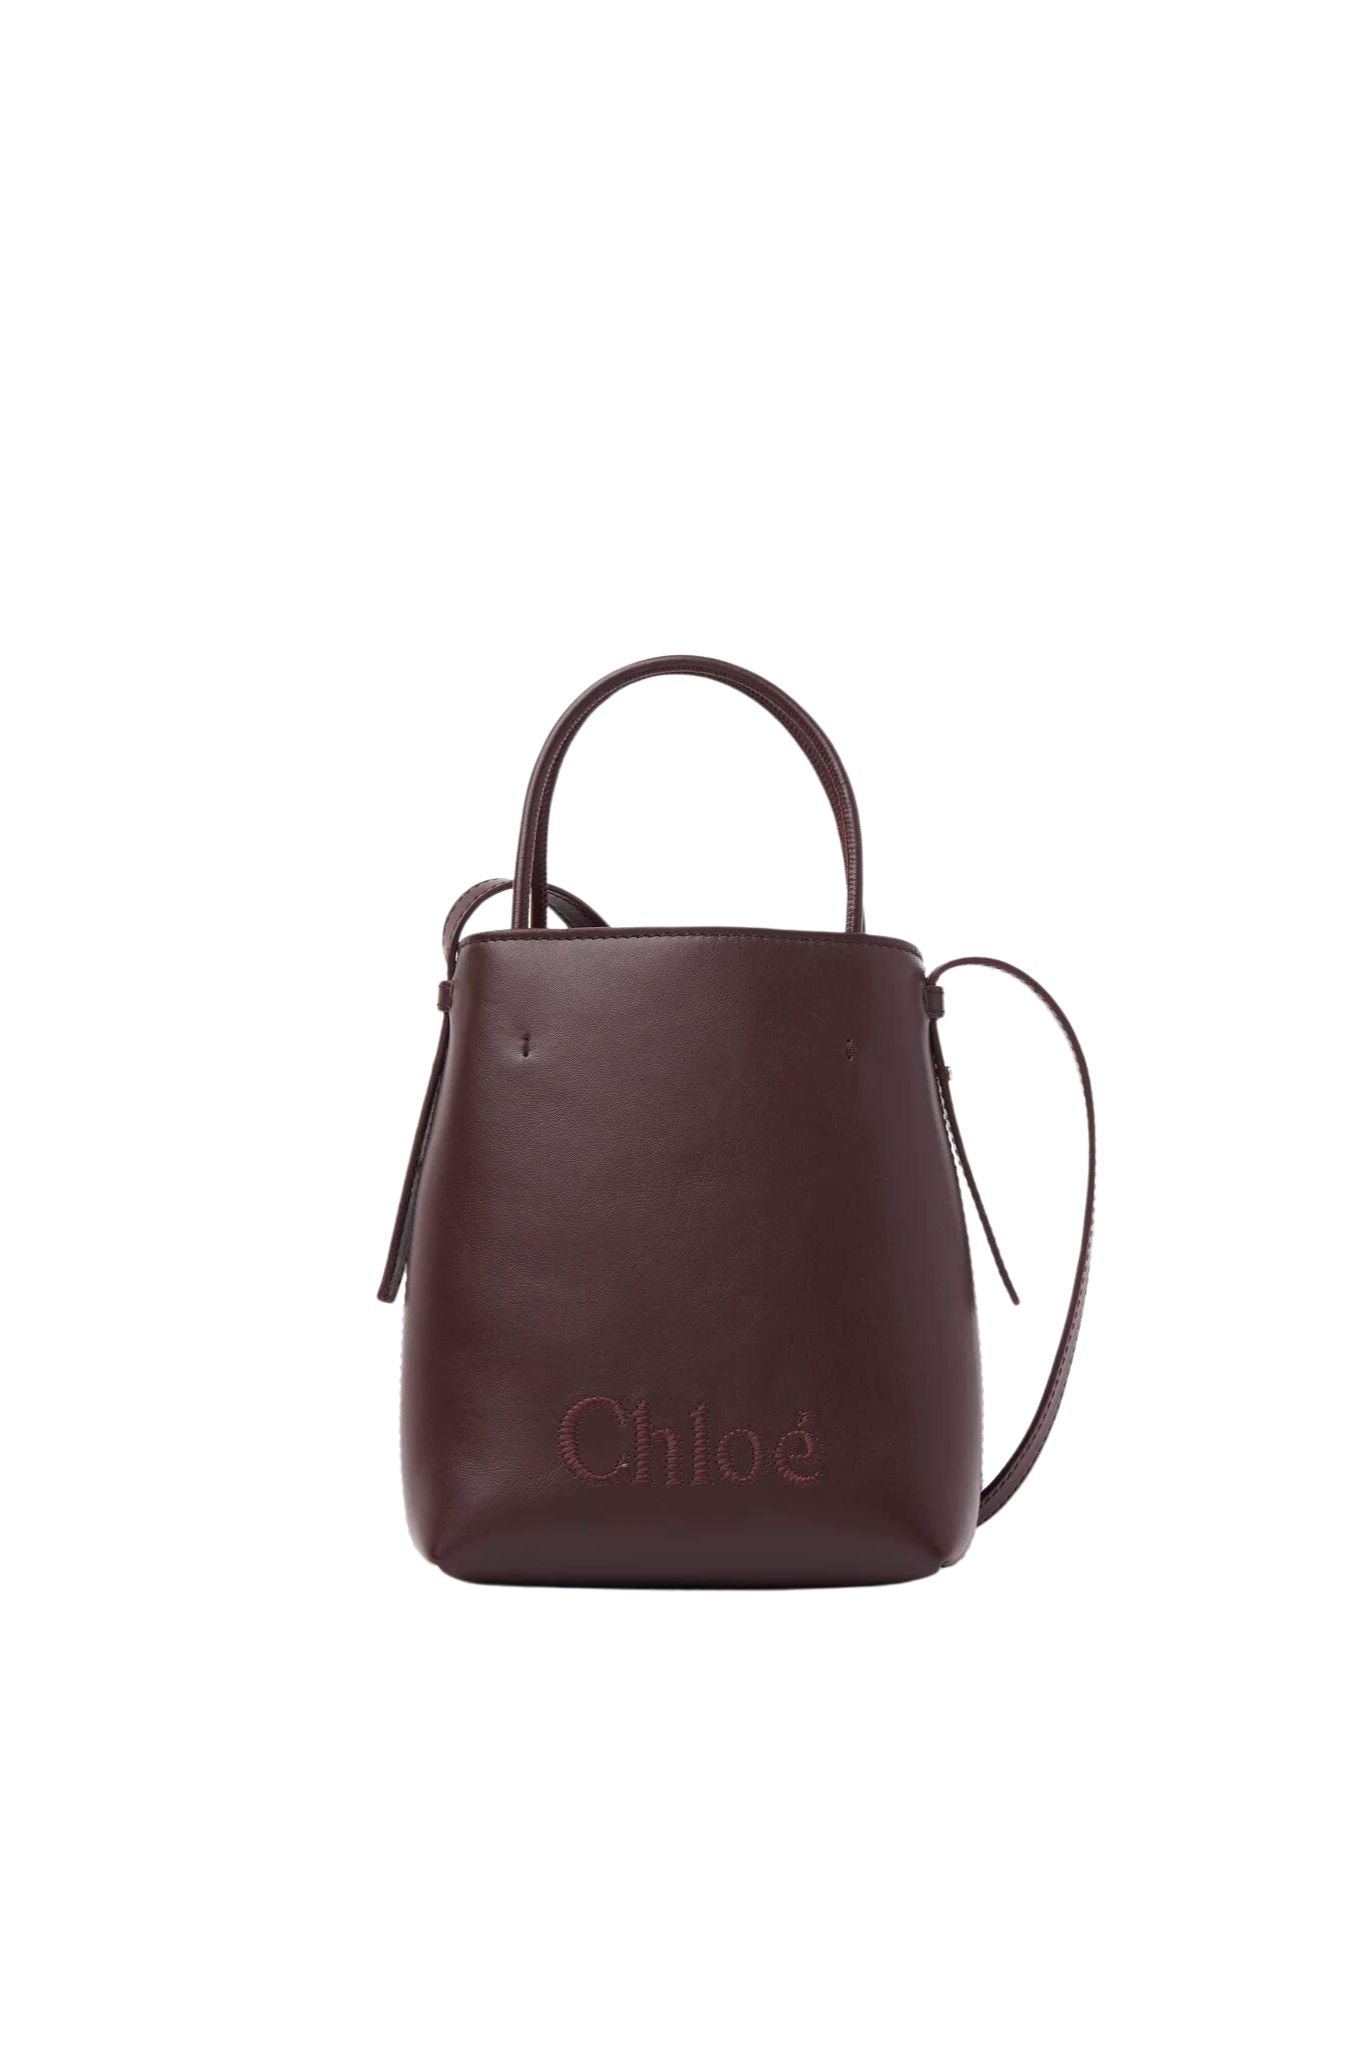 Chloe Sense Micro Tote Bag